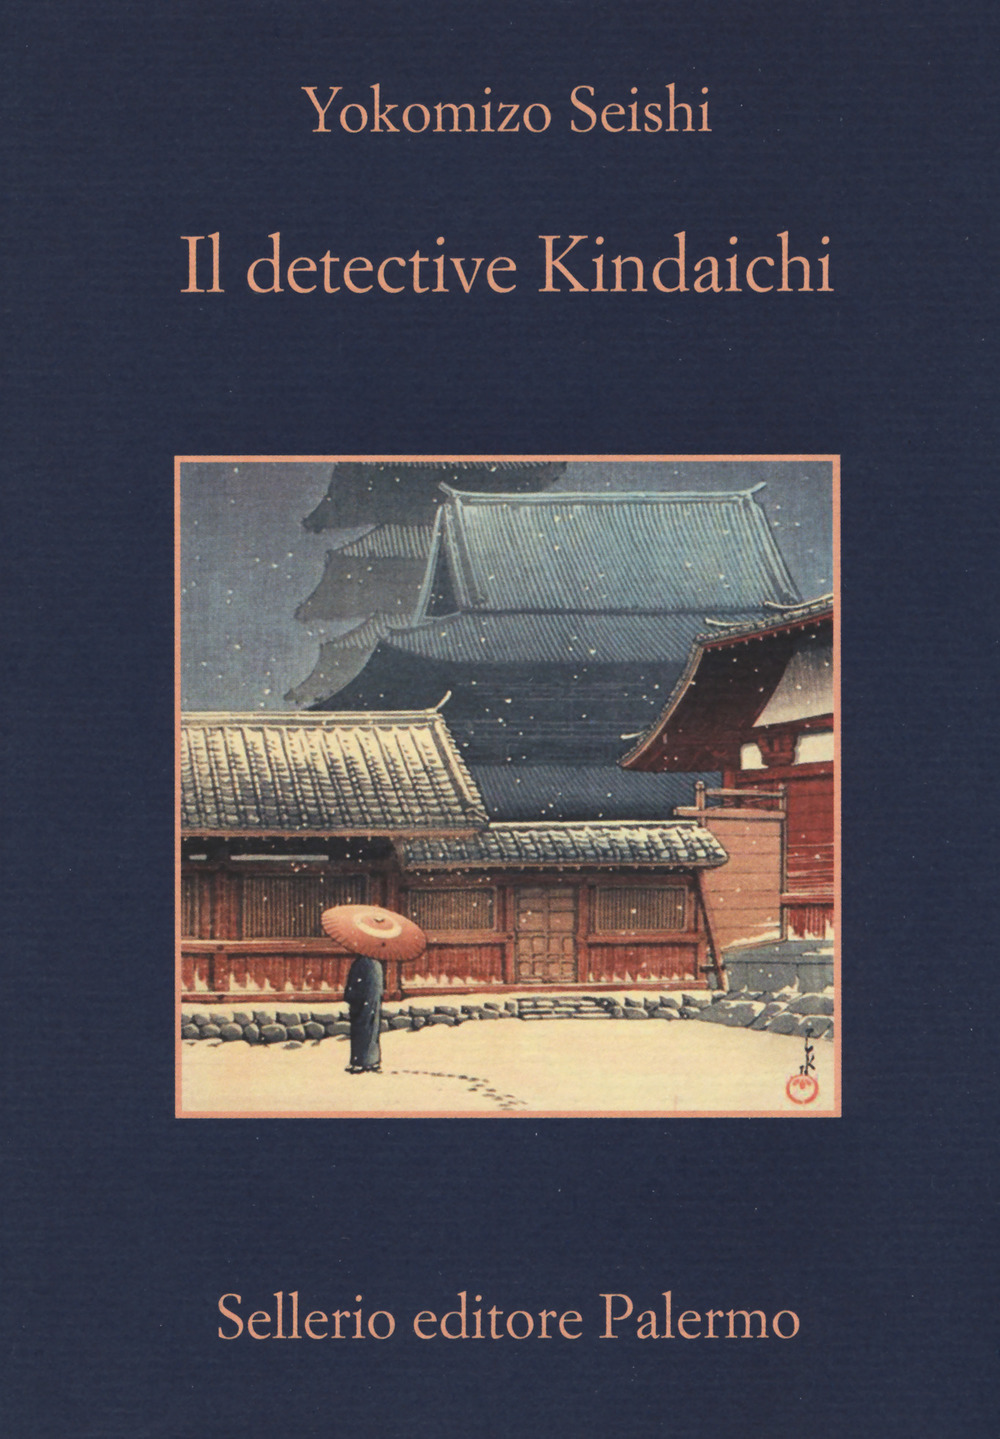 Image of Il detective Kindaichi